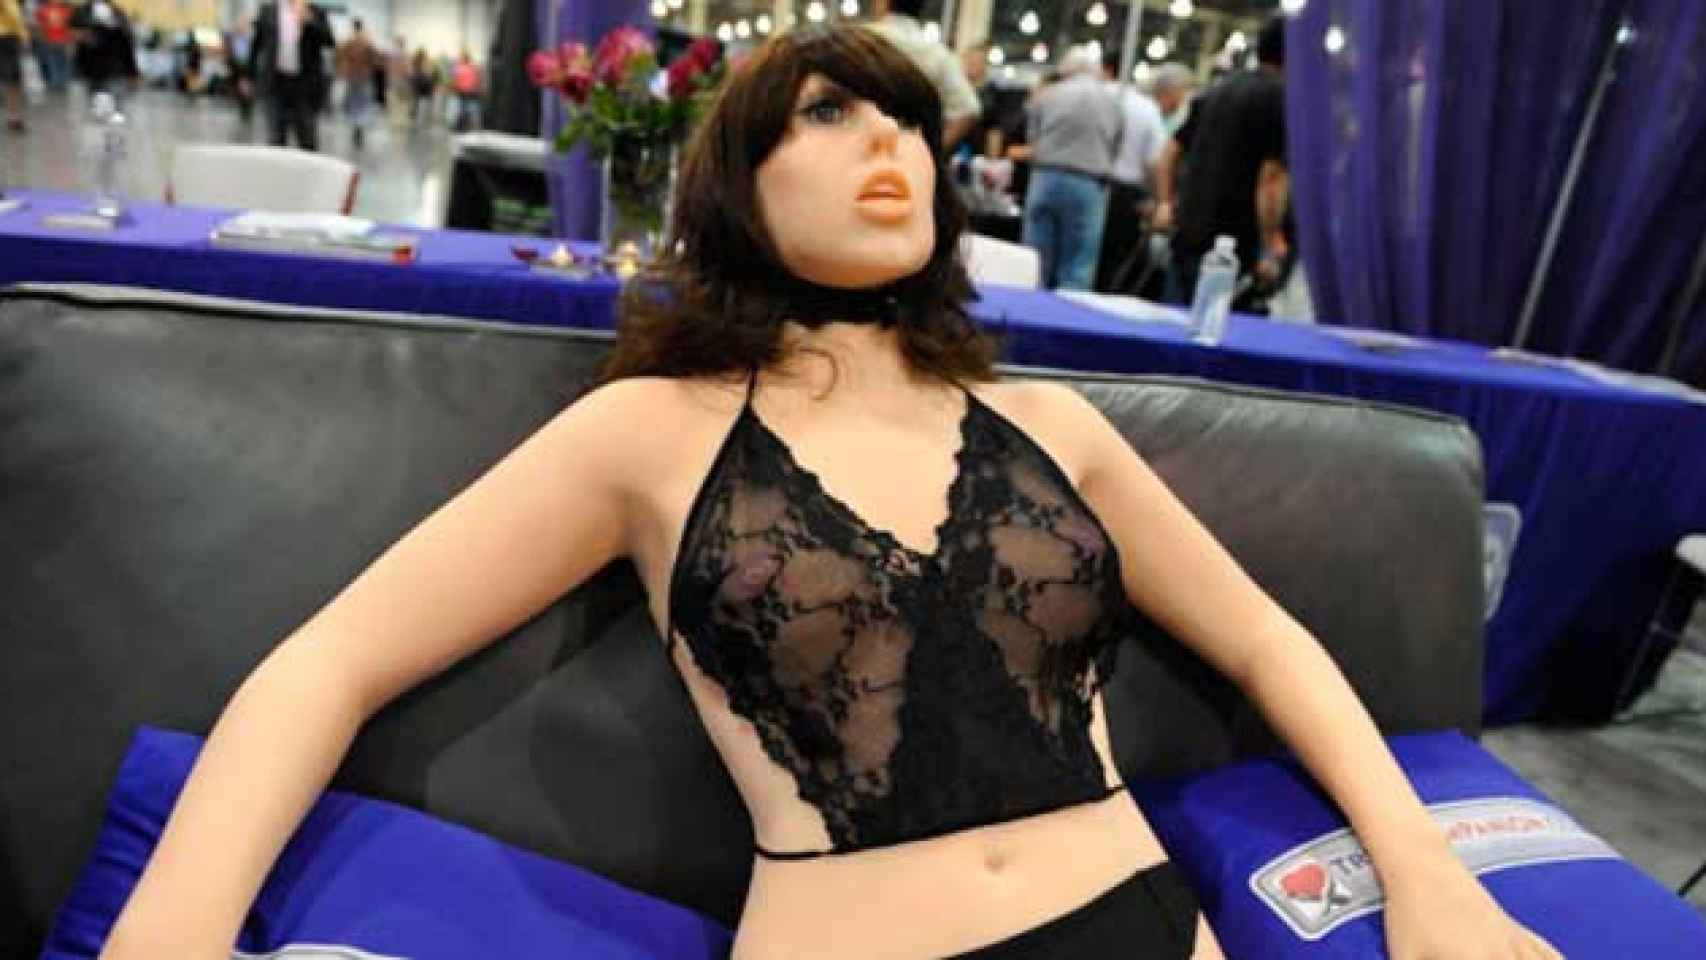 El nuevo robot sexual para simular una violación / CG